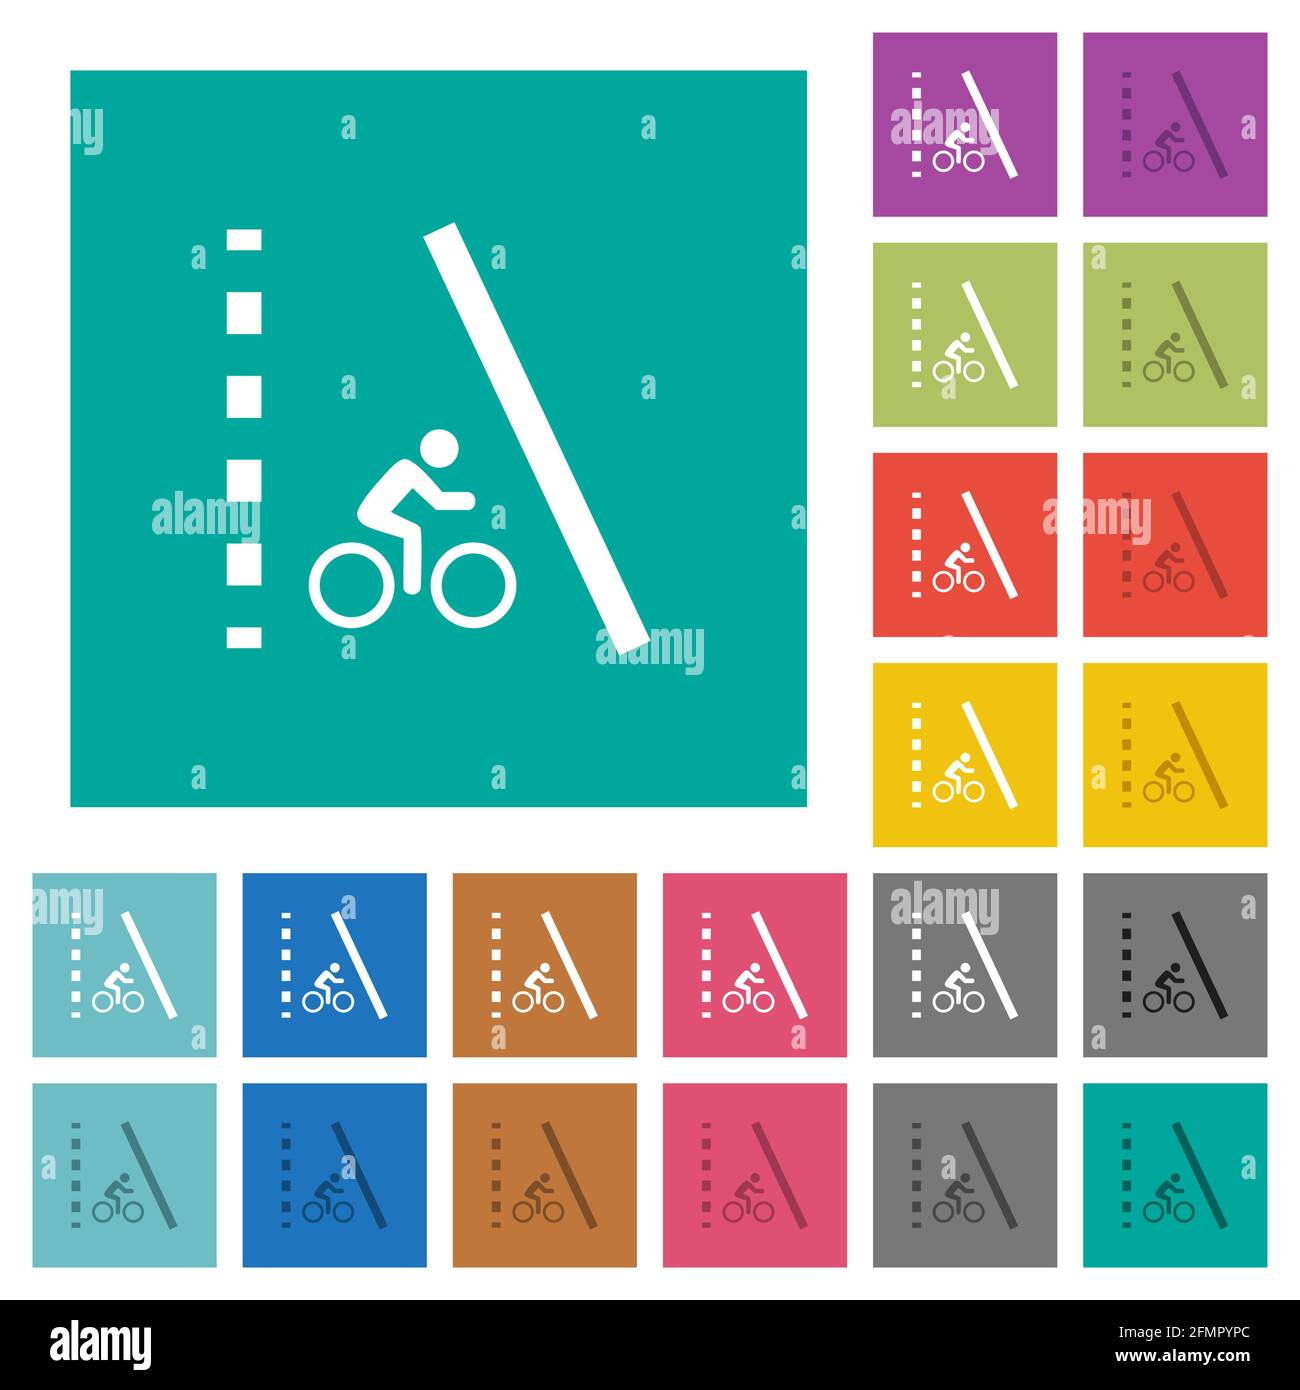 Mehrfarbige flache Symbole auf schlichten quadratischen Hintergründen für die Fahrradspur. Weiße und dunklere Symbolvarianten für schwebe- oder aktive Effekte. Stock Vektor